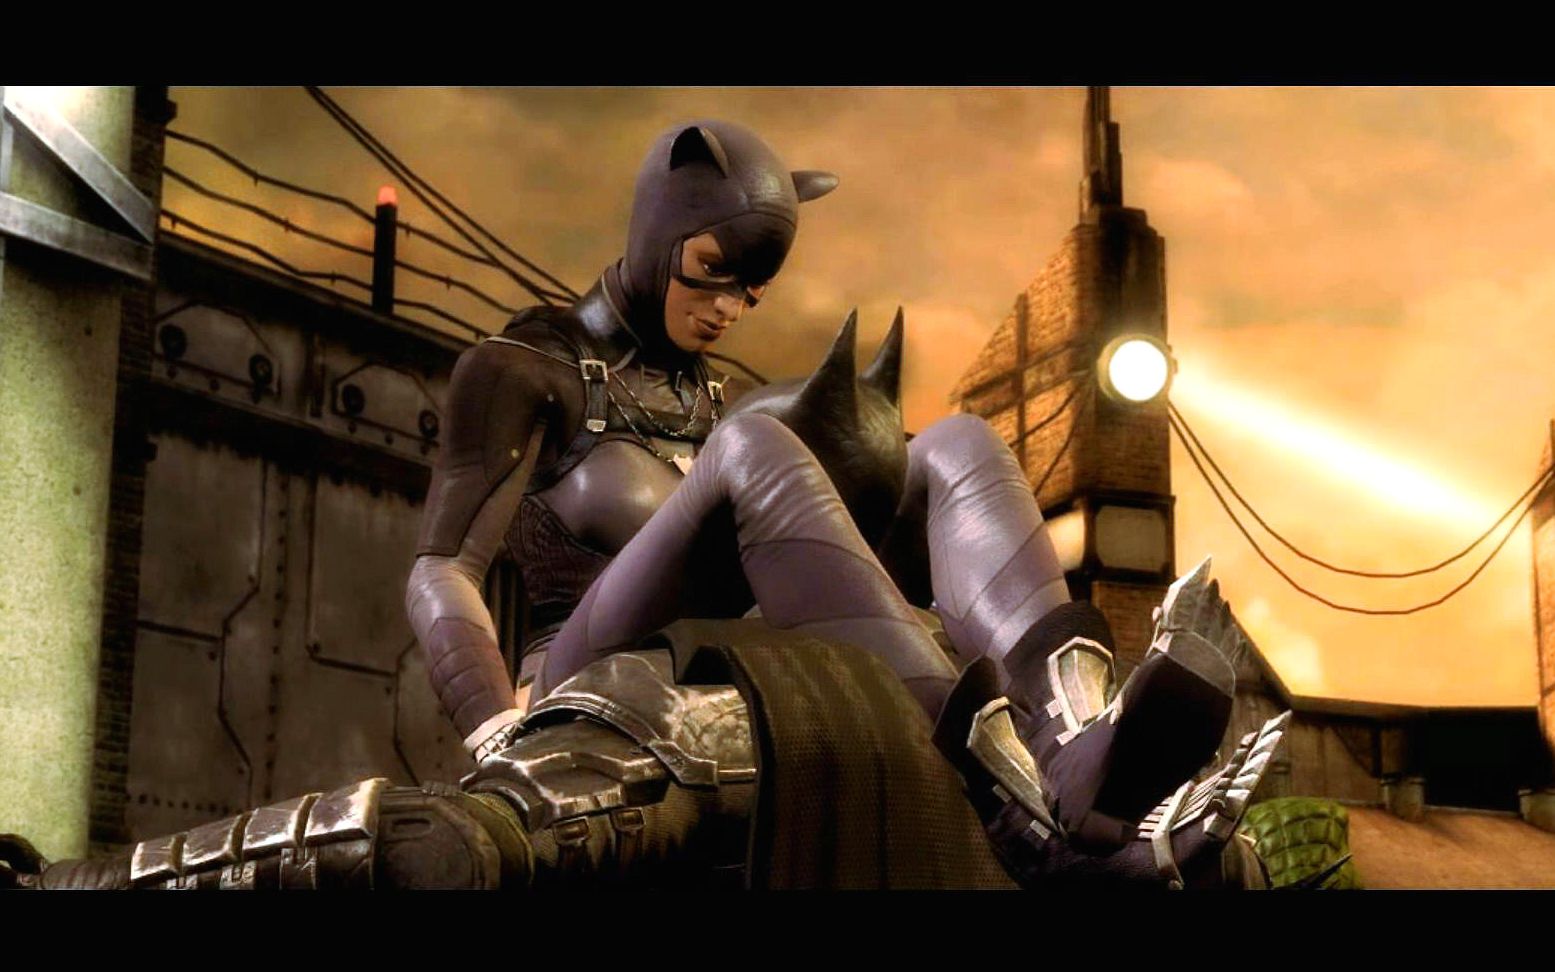 活动作品猫女这是要对蝙蝠侠做什么有点辣眼